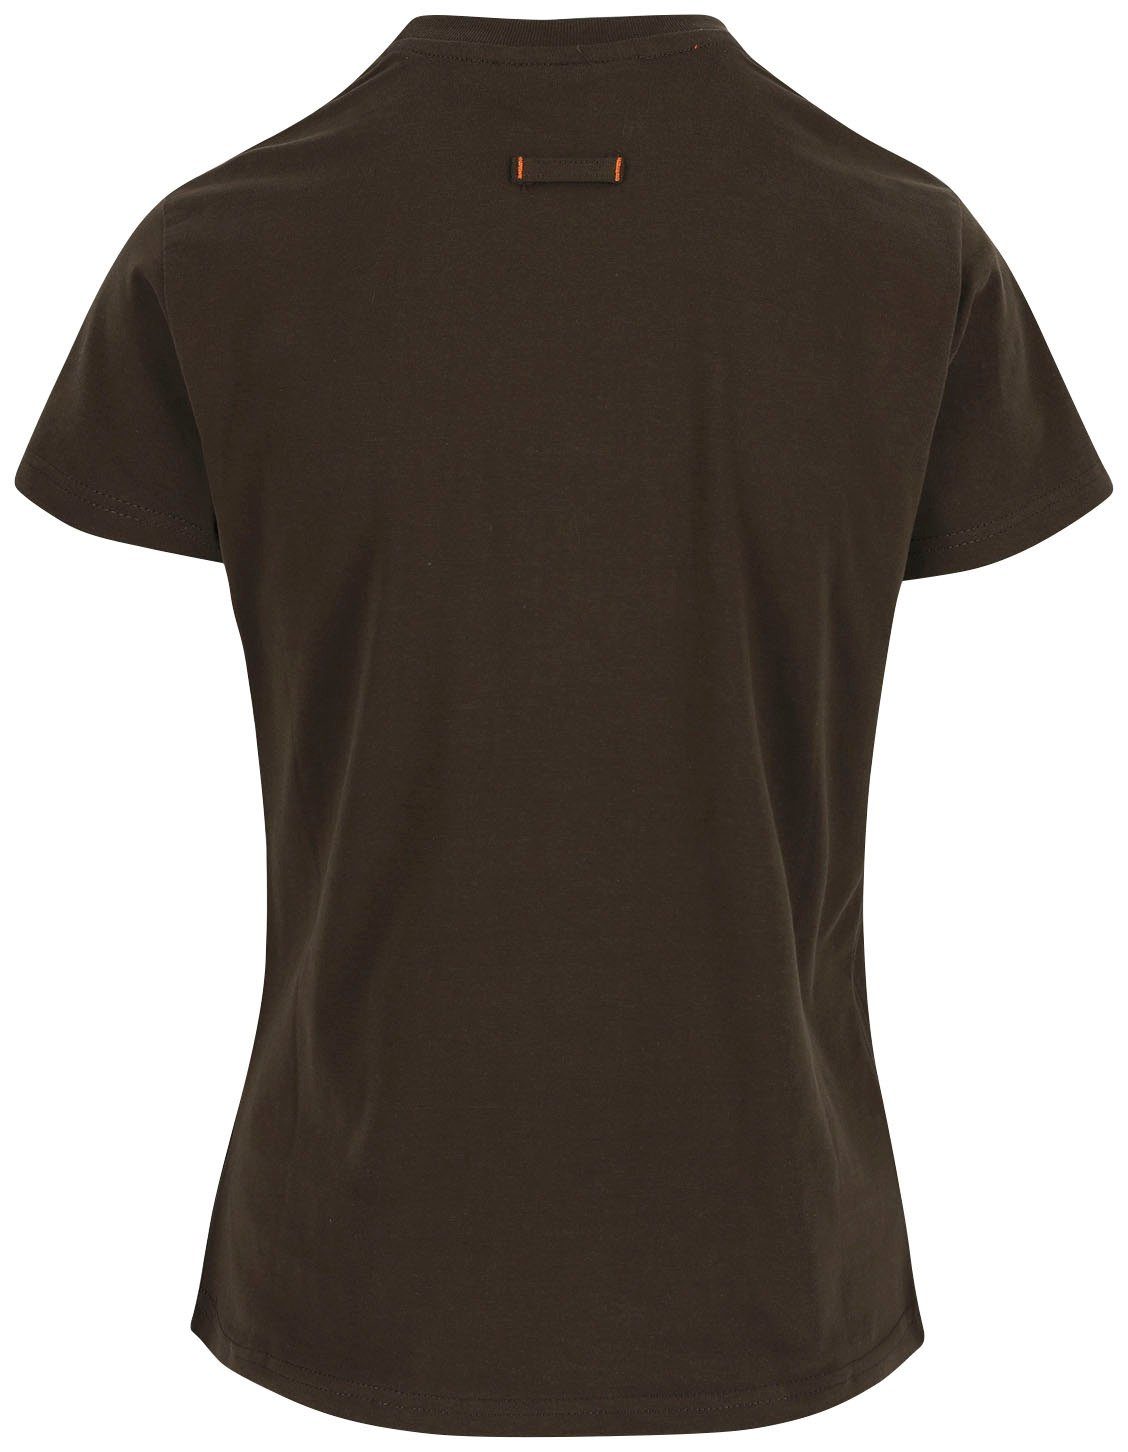 Epona Herock Damen T-Shirt Tragegefühl braun Figurbetont, Kurzärmlig hintere T-Shirt angenehmes 1 Schlaufe,